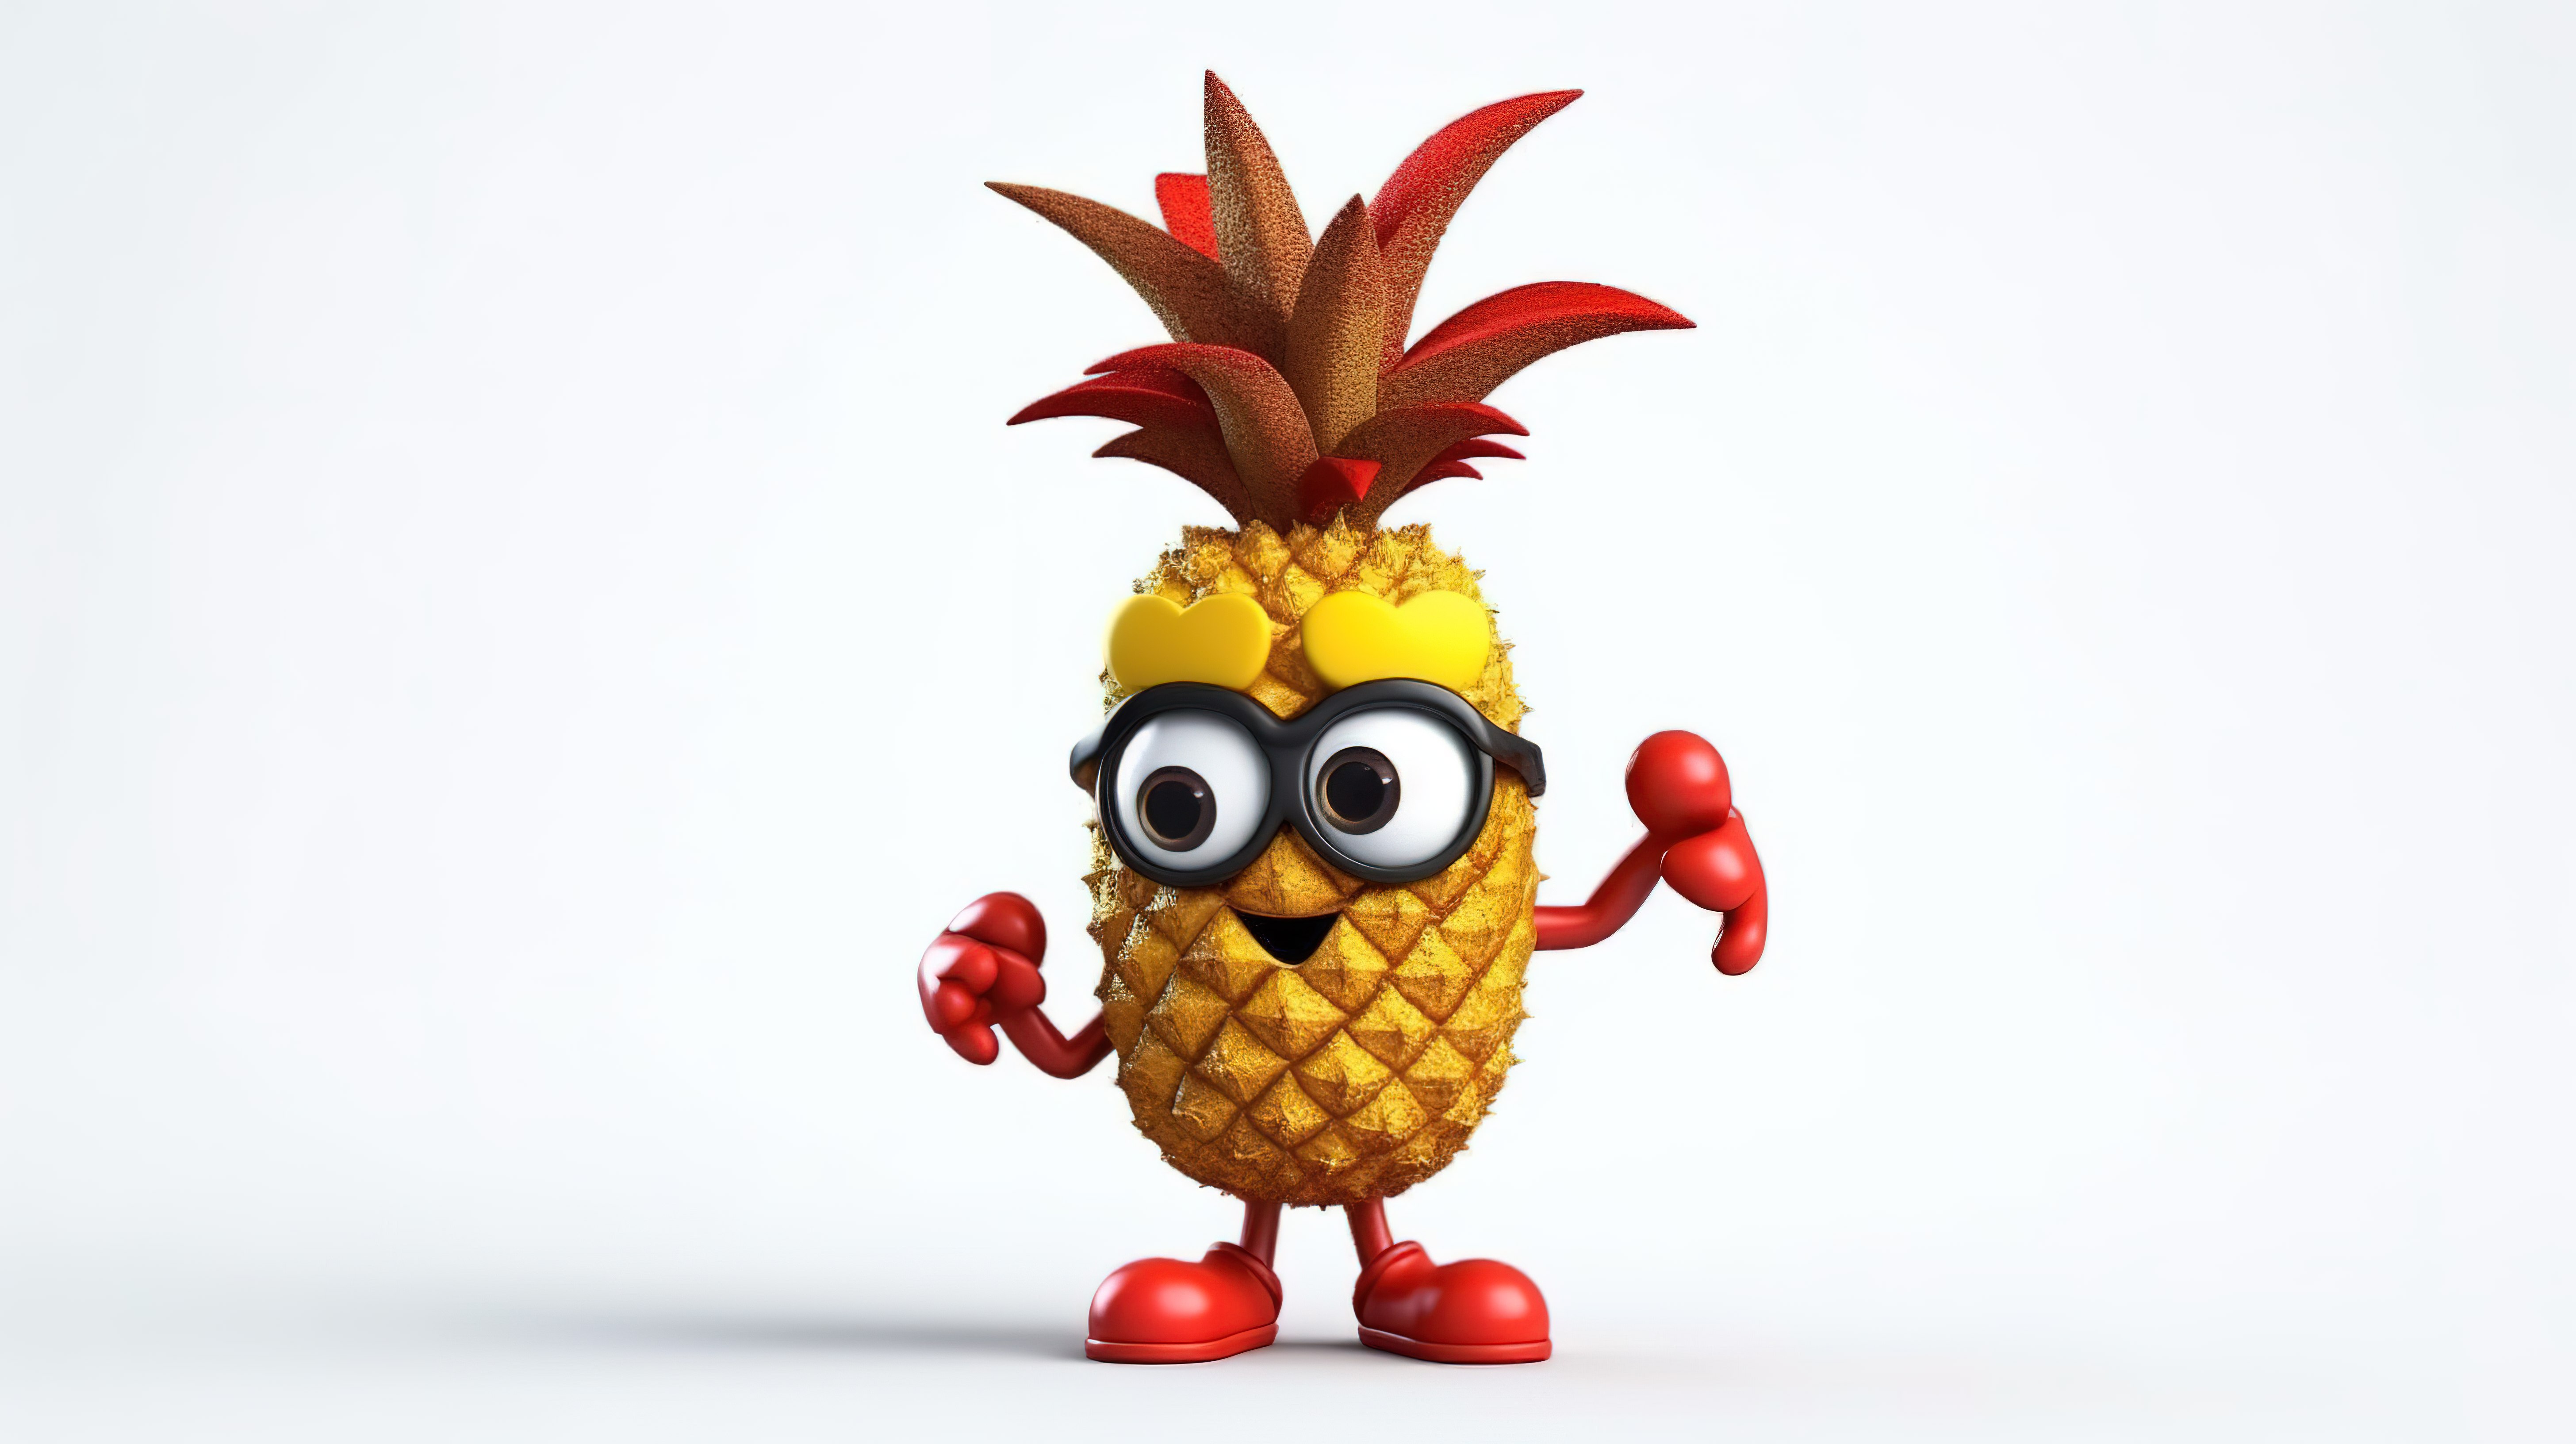 3D 渲染的卡通时髦菠萝，白色背景上带有红色问号，是时尚先锋的古怪吉祥物图片